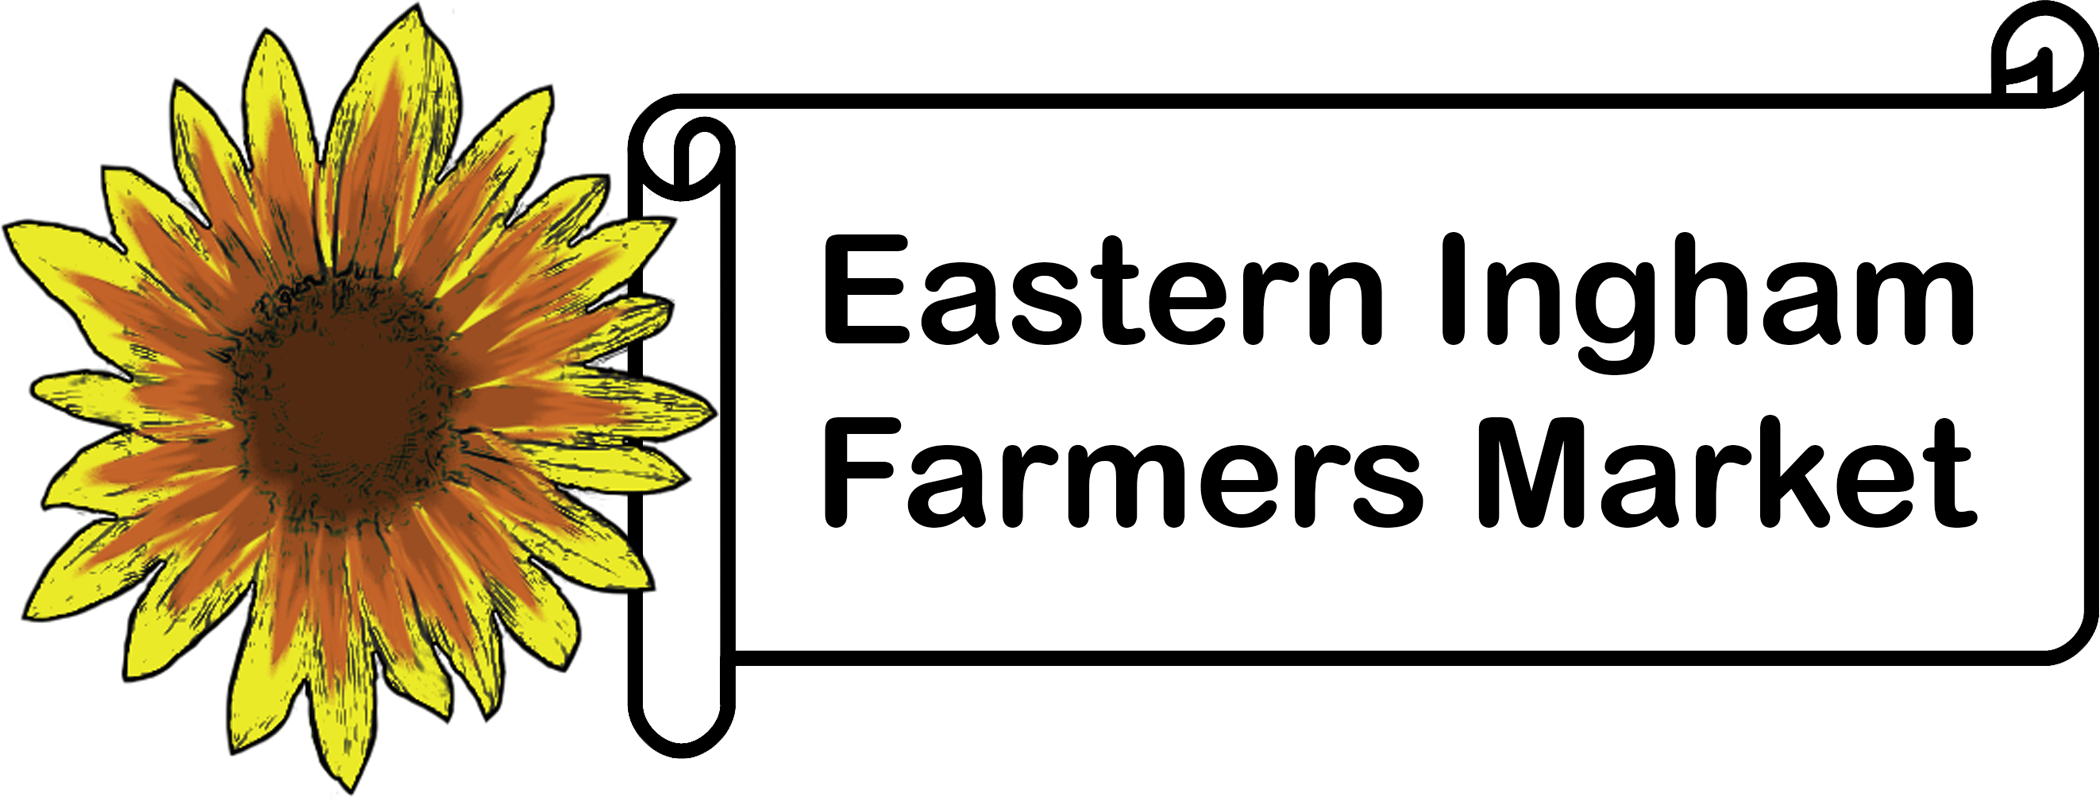 Eastern Ingham Farmers Market logo